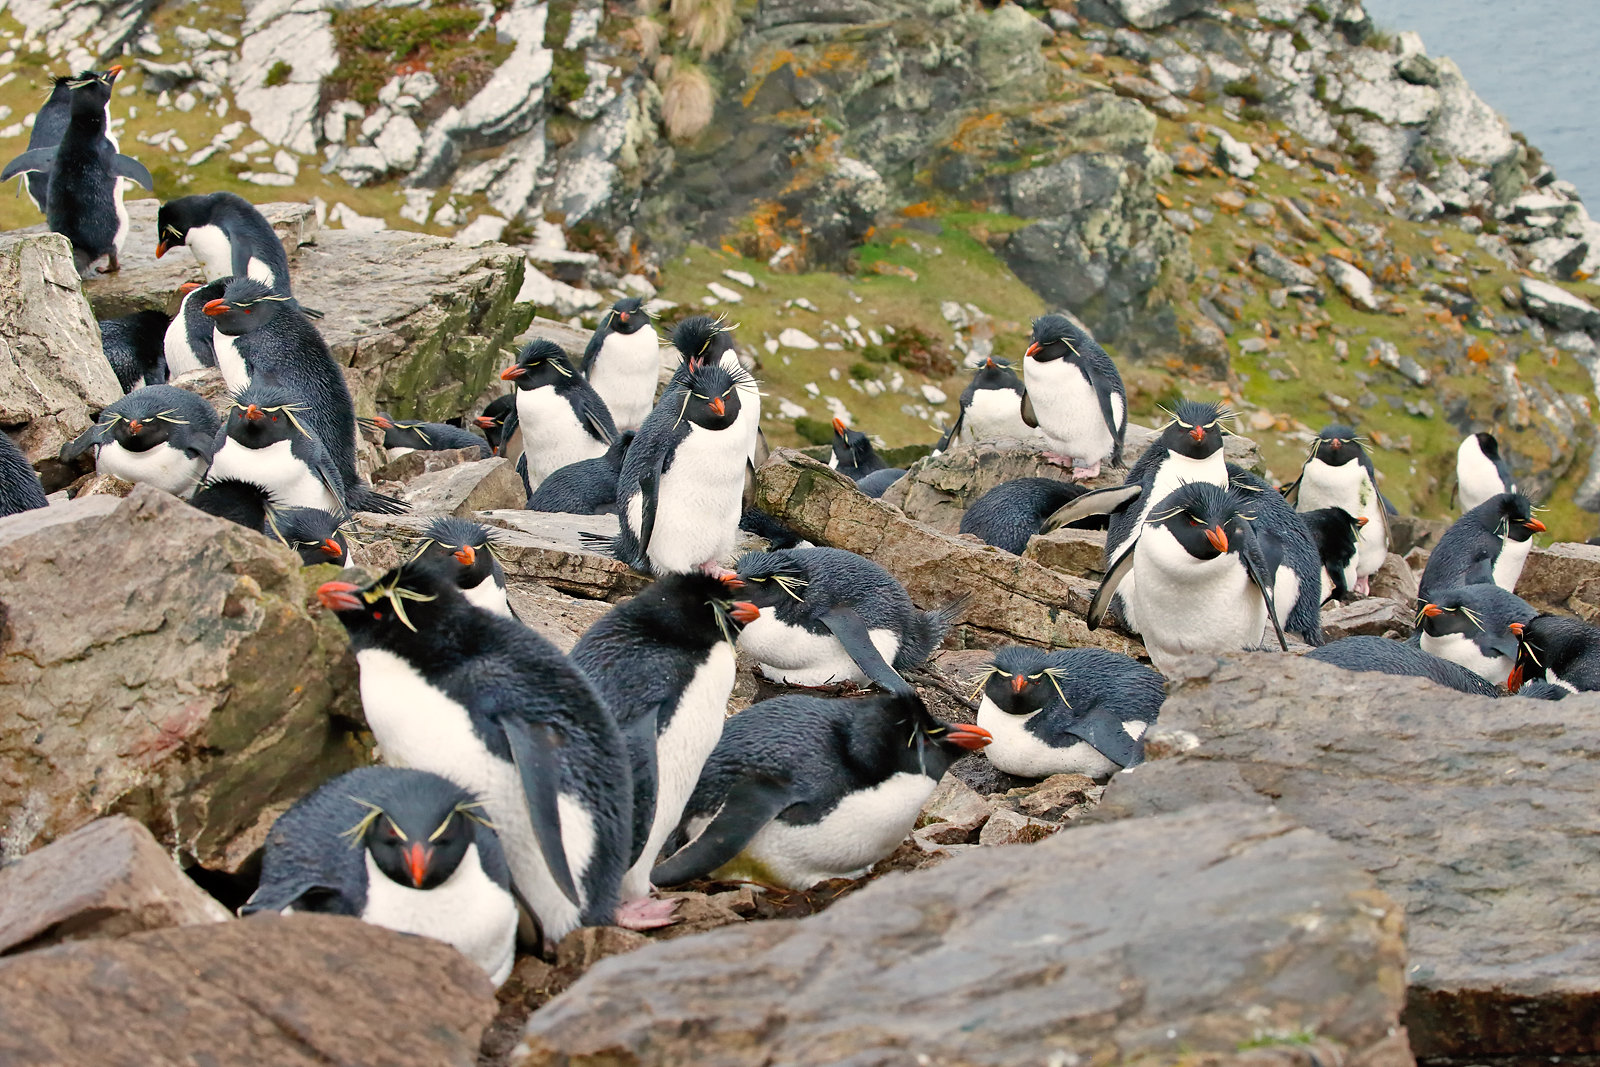 Rockhopper Penguin rookery